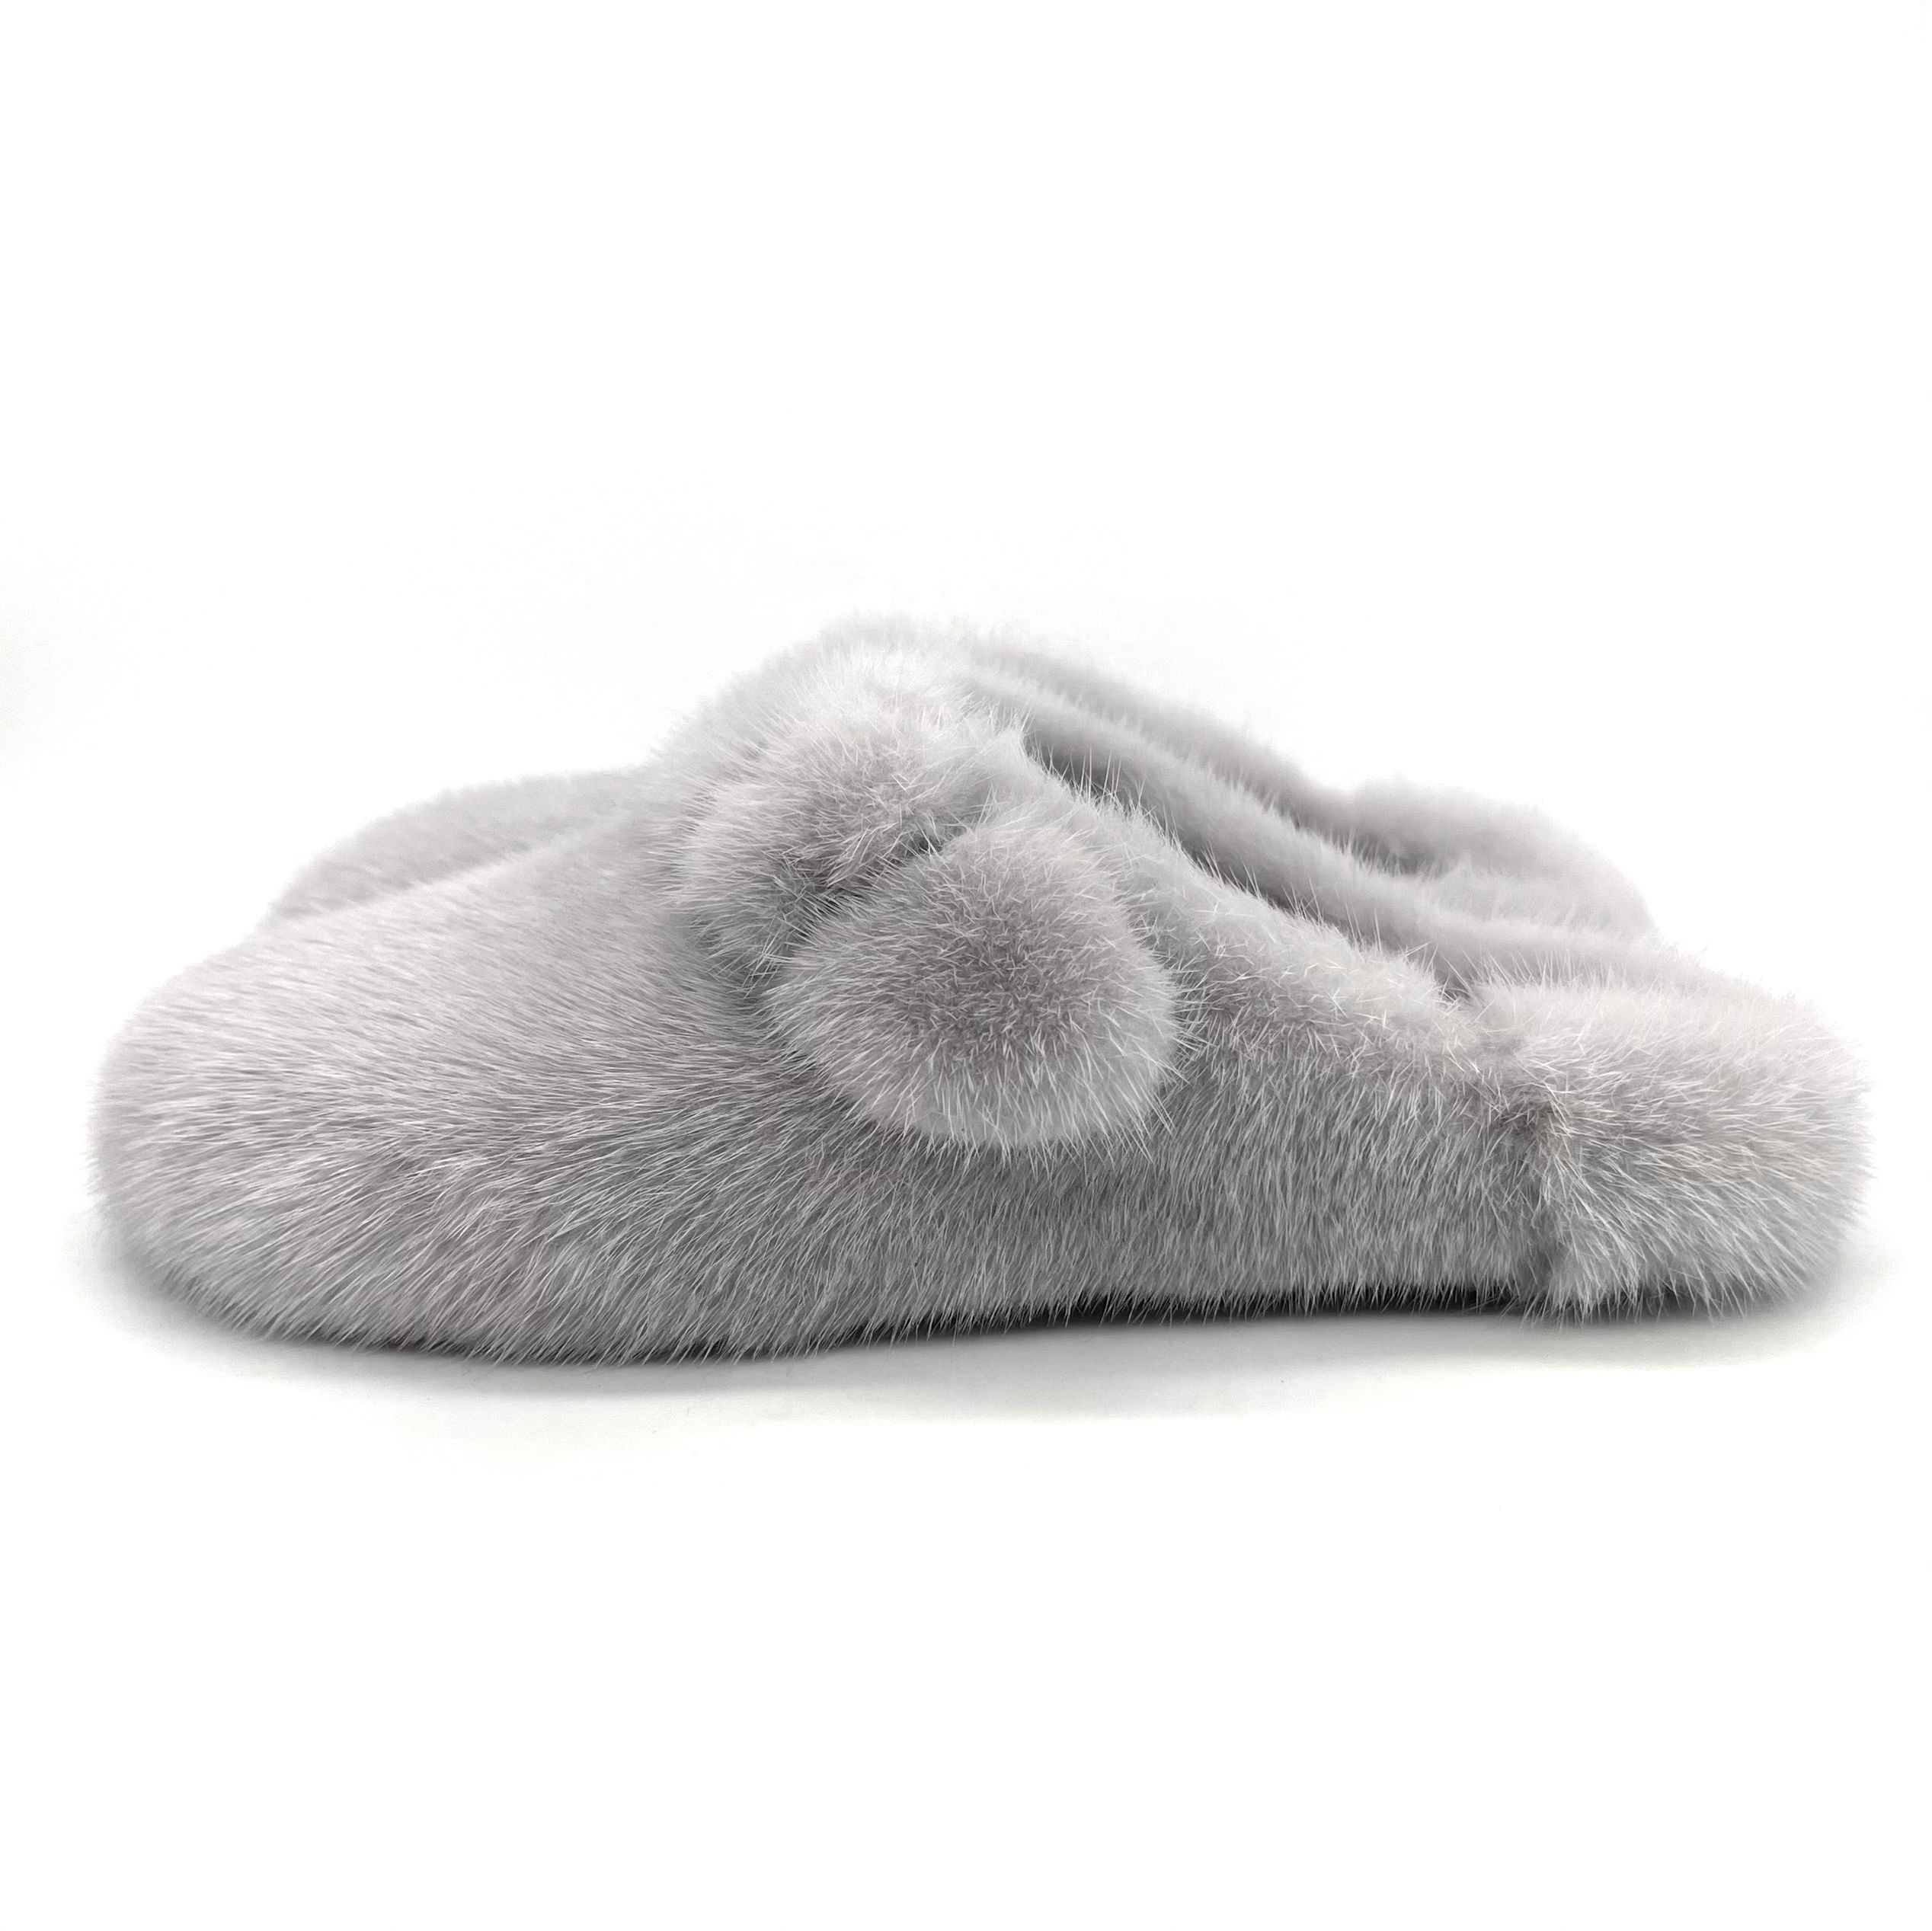 HT1129 Mode Winter Warme Flauschige Faux Nerz Pantoletten Flache Rutschen Geschlossene Zehen Loafer Indoor Outdoor Fell Hausschuhe für Frauen